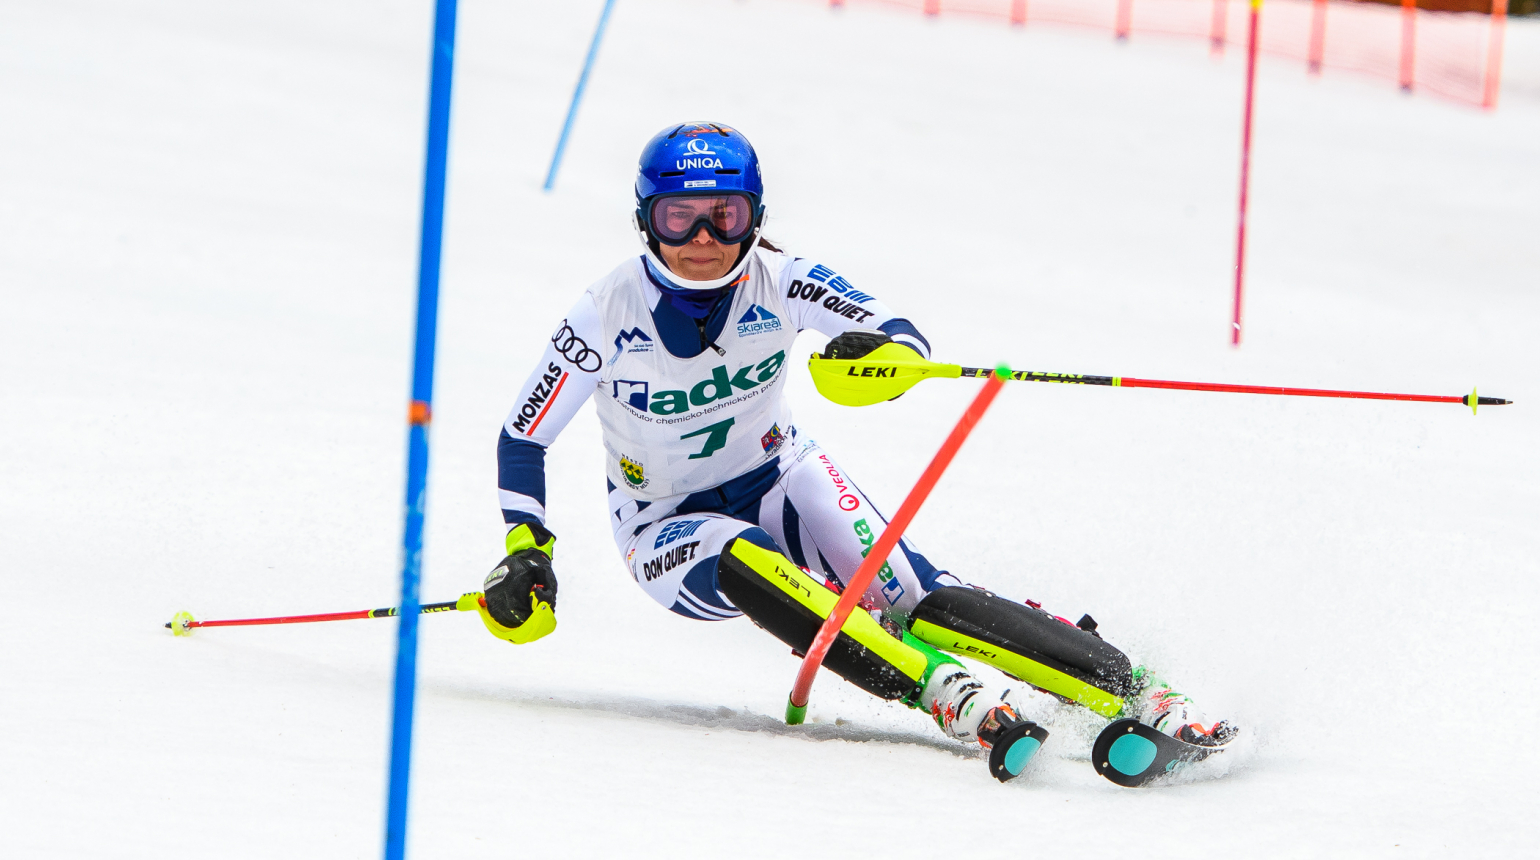 Republikovými mistry ve slalomu se stali Müller a Dubovská